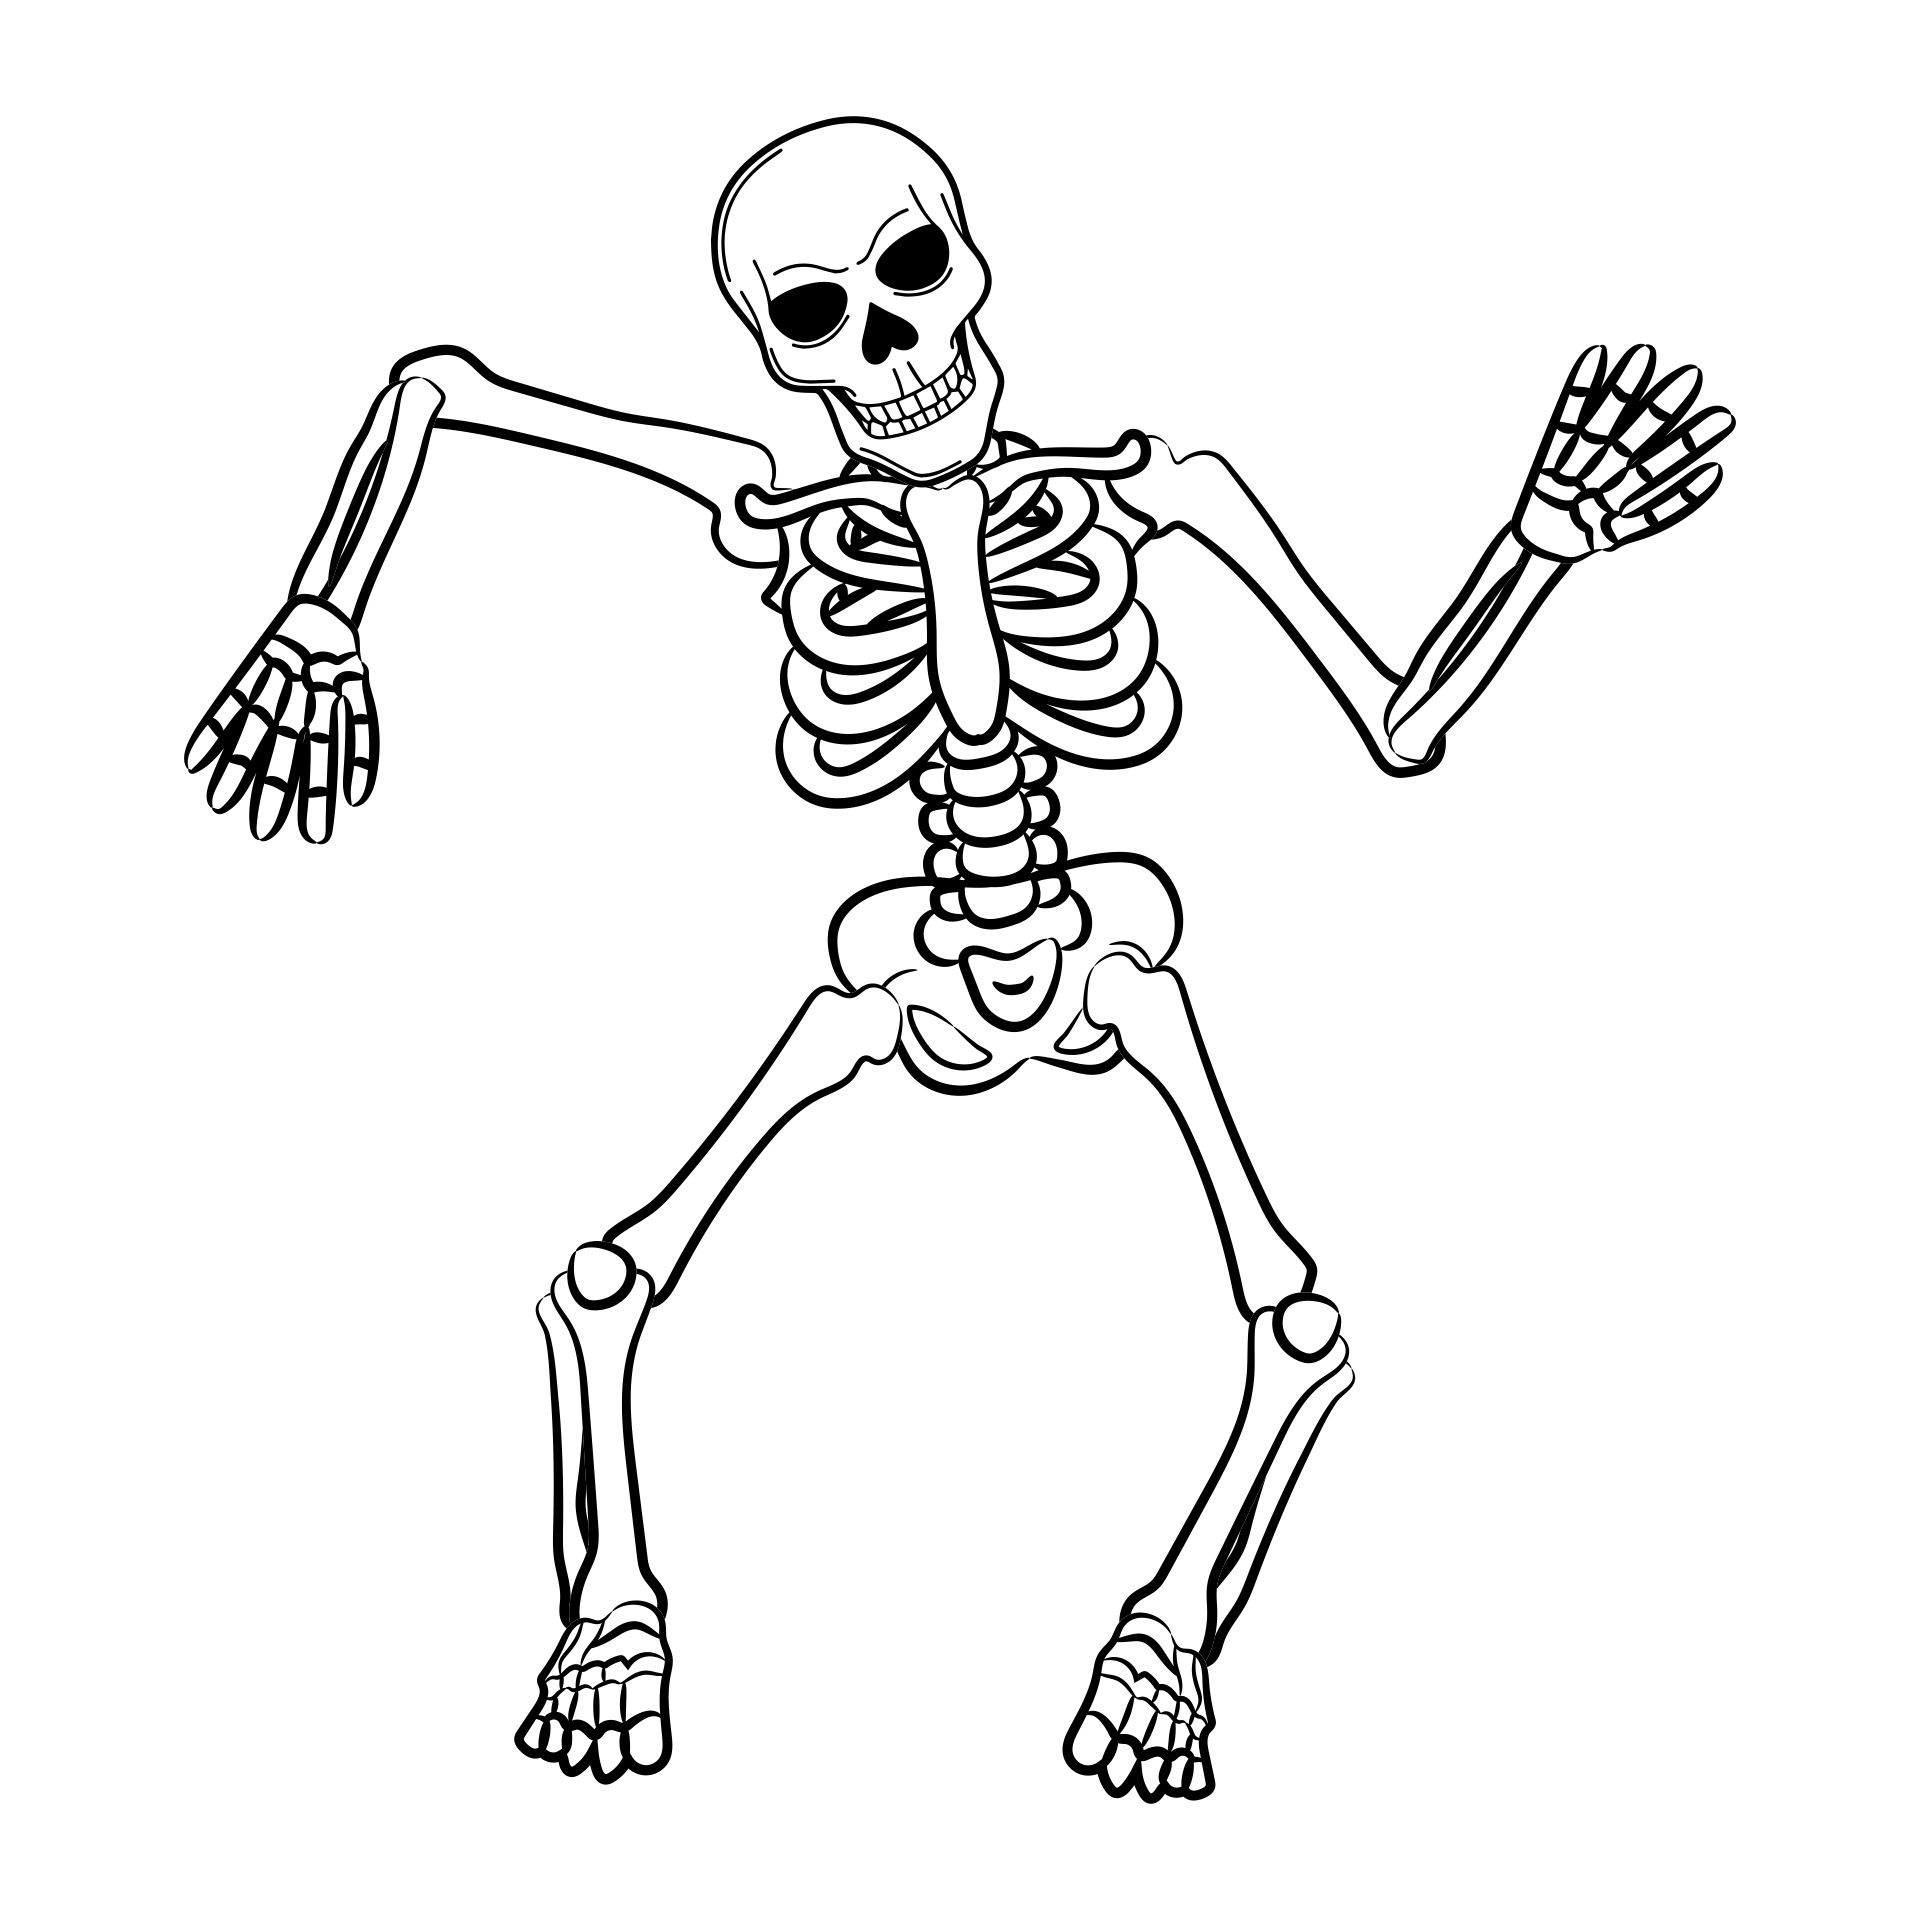 Halloween Skeleton Coloring Pages - 15 Free PDF Printables | Printablee